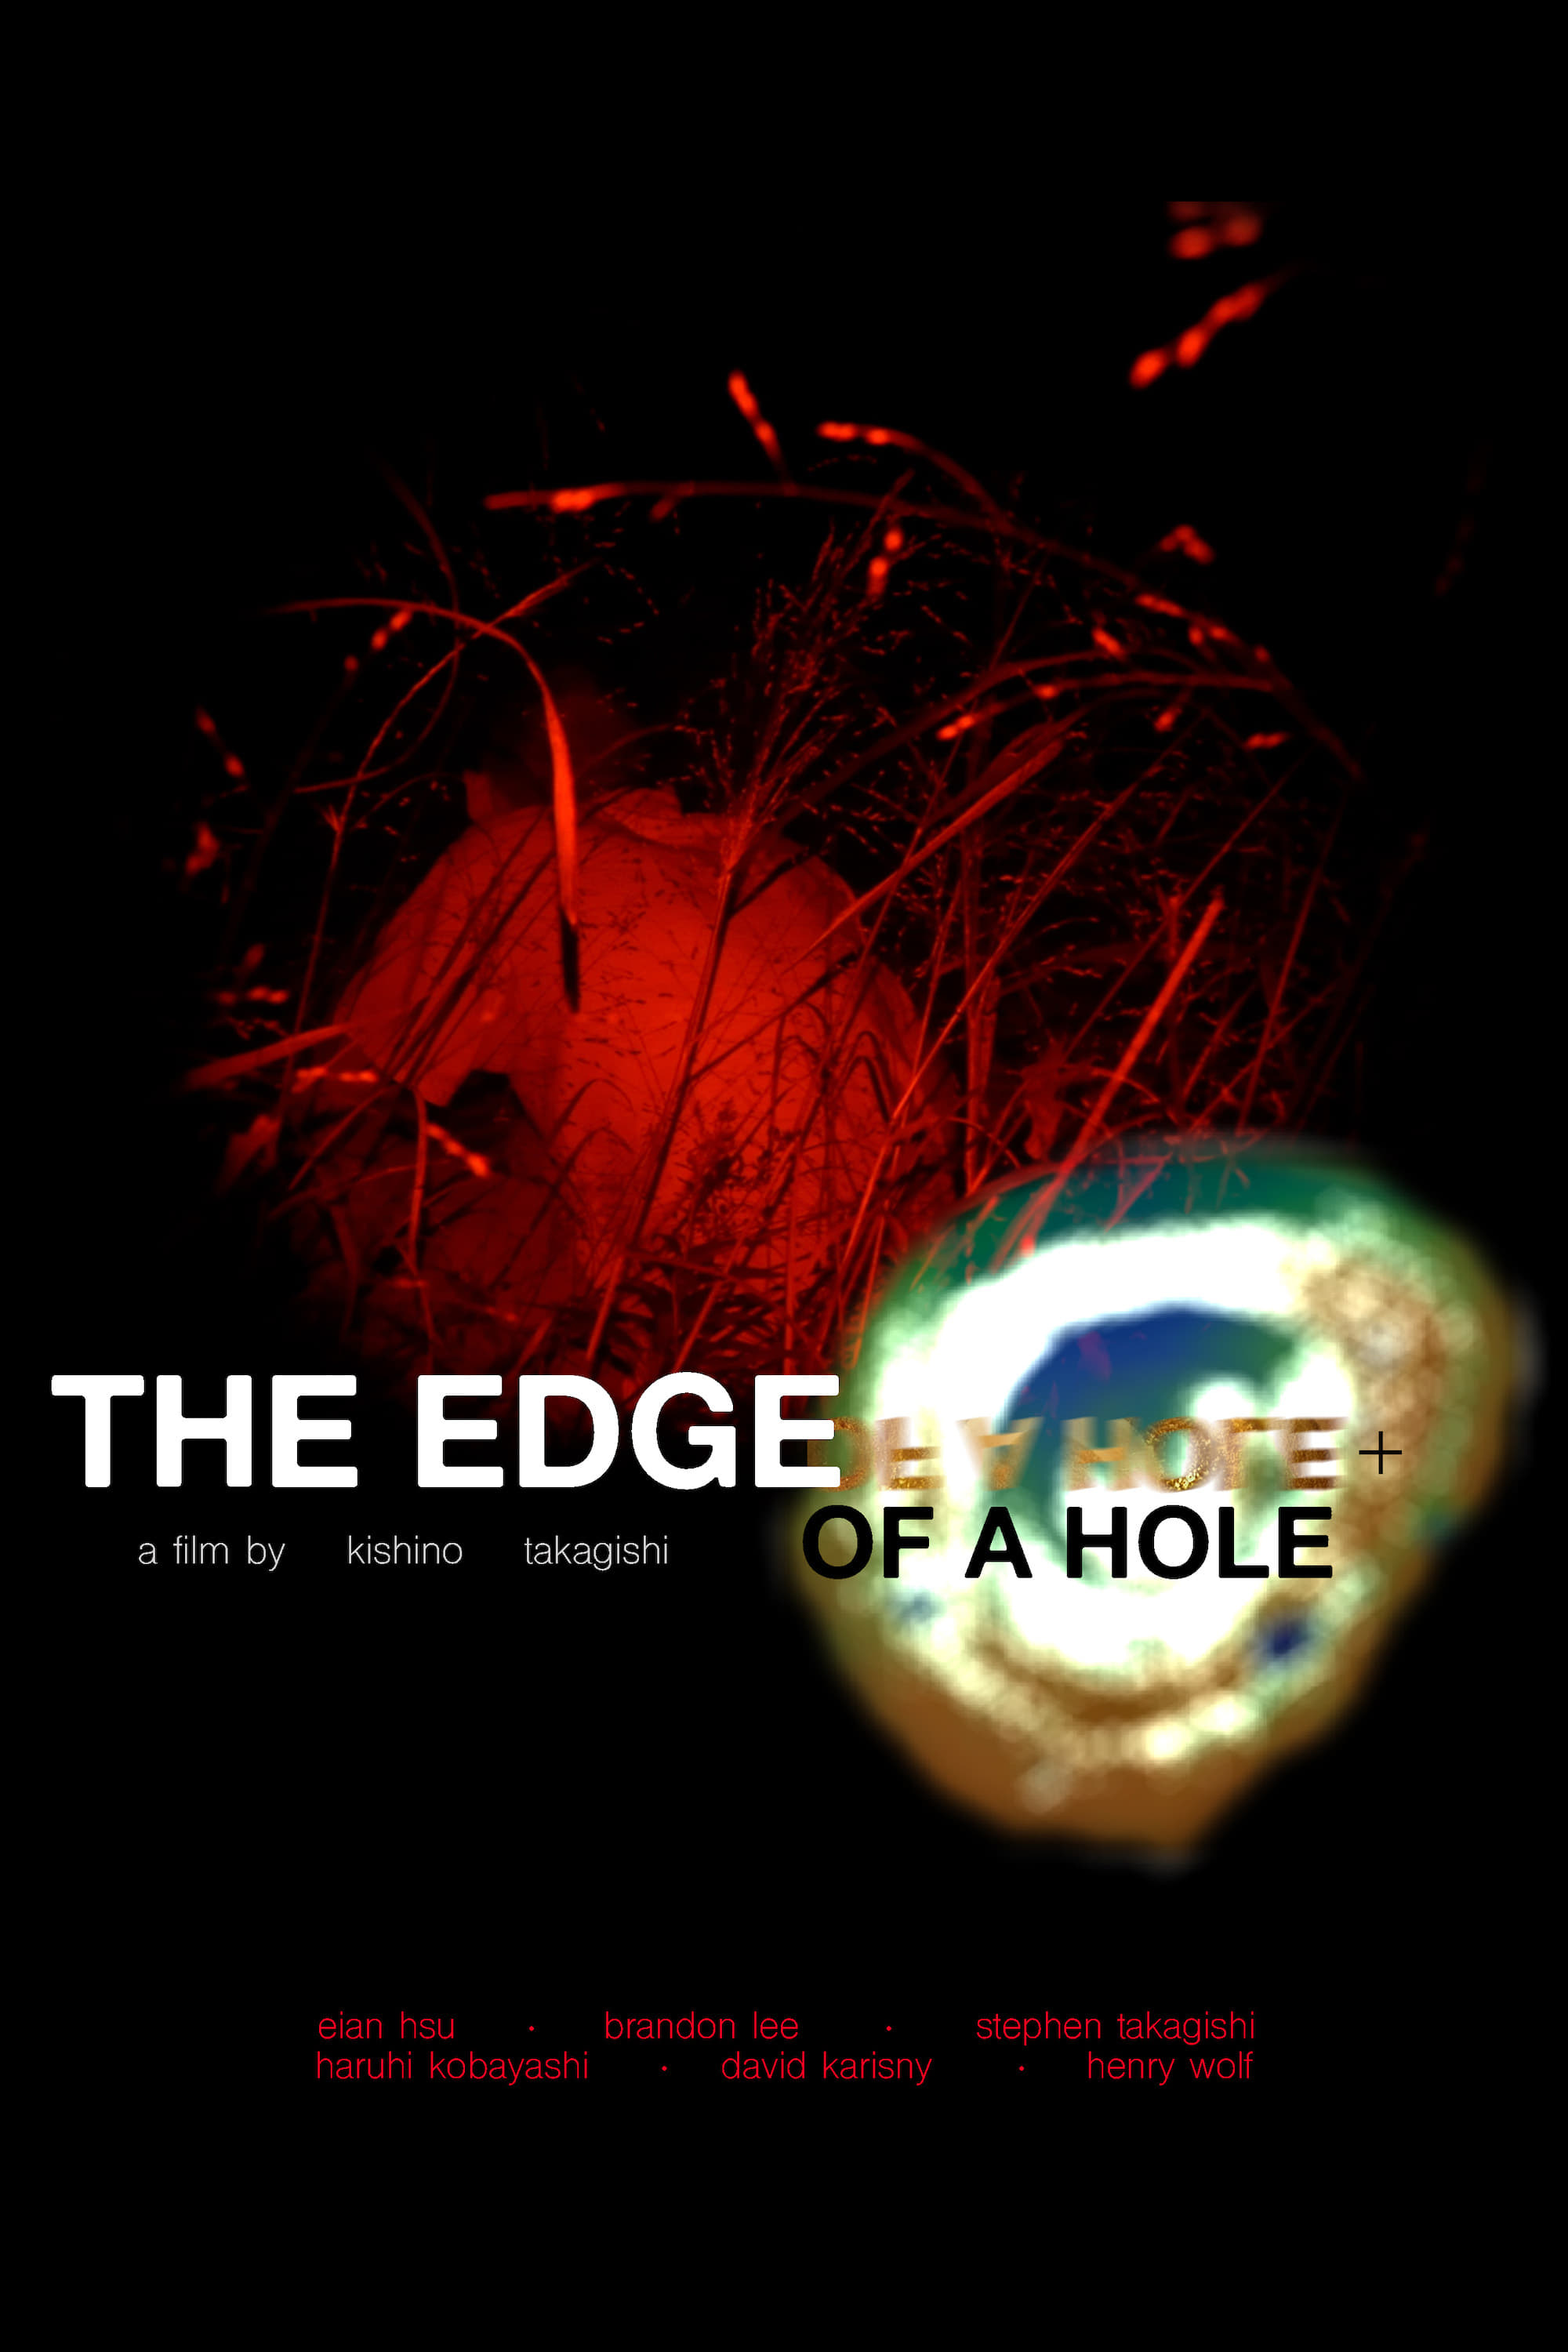 The Edge of a Hole